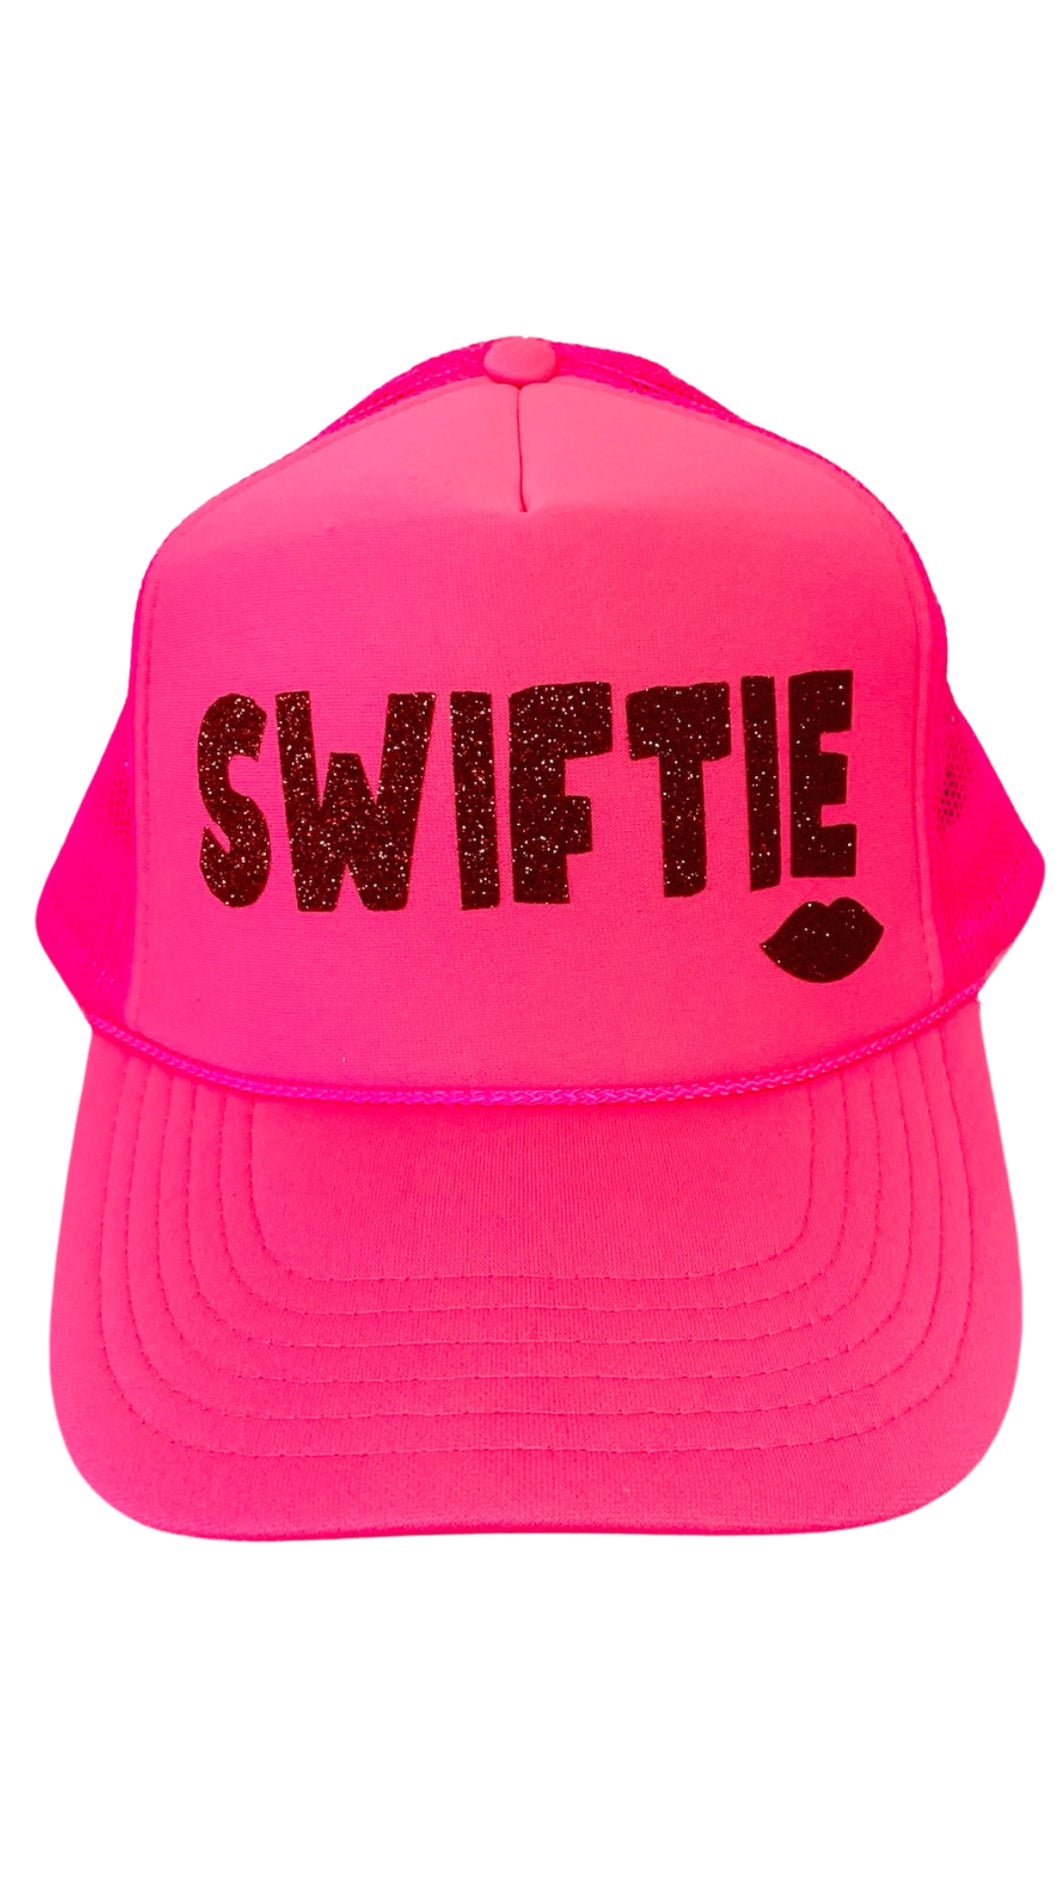 Swiftie Youth Trucker Hat